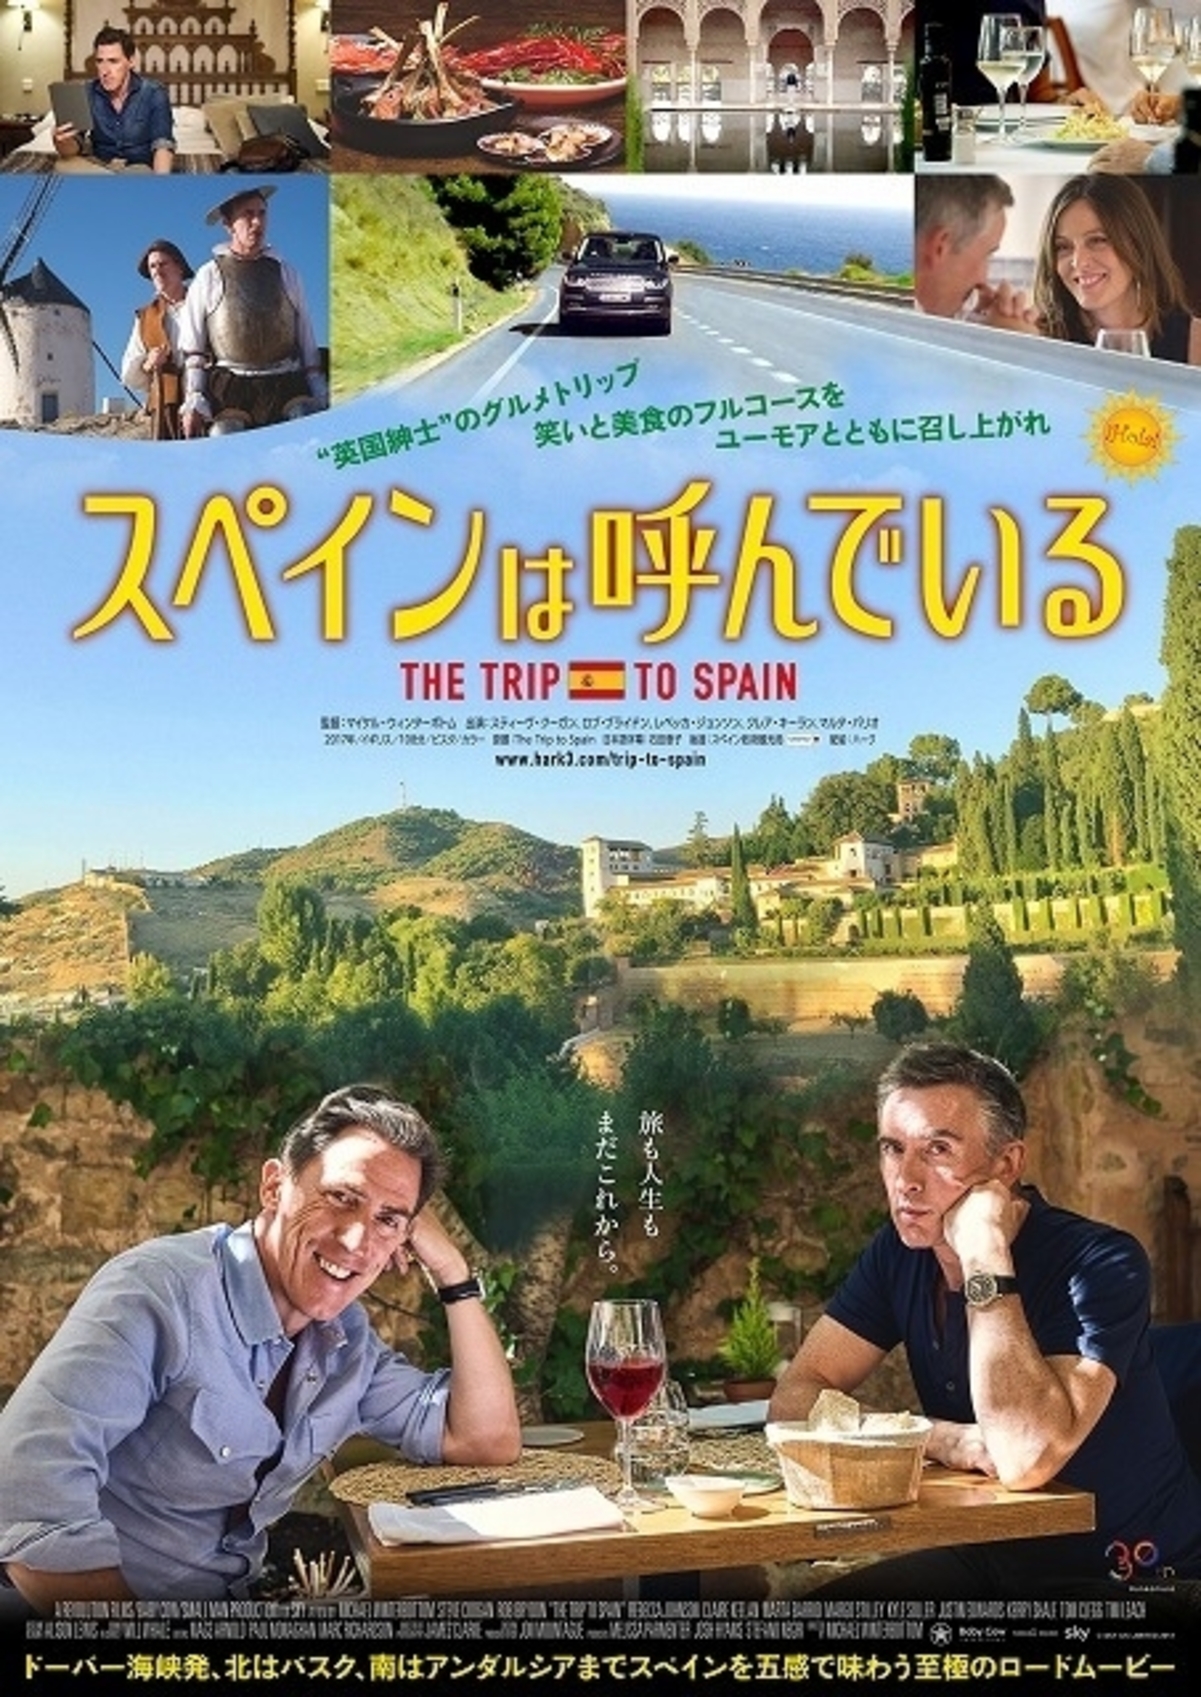 爆笑モノマネ 極上グルメのフルコース スペインは呼んでいる 日本版予告入手 映画ニュース 映画 com